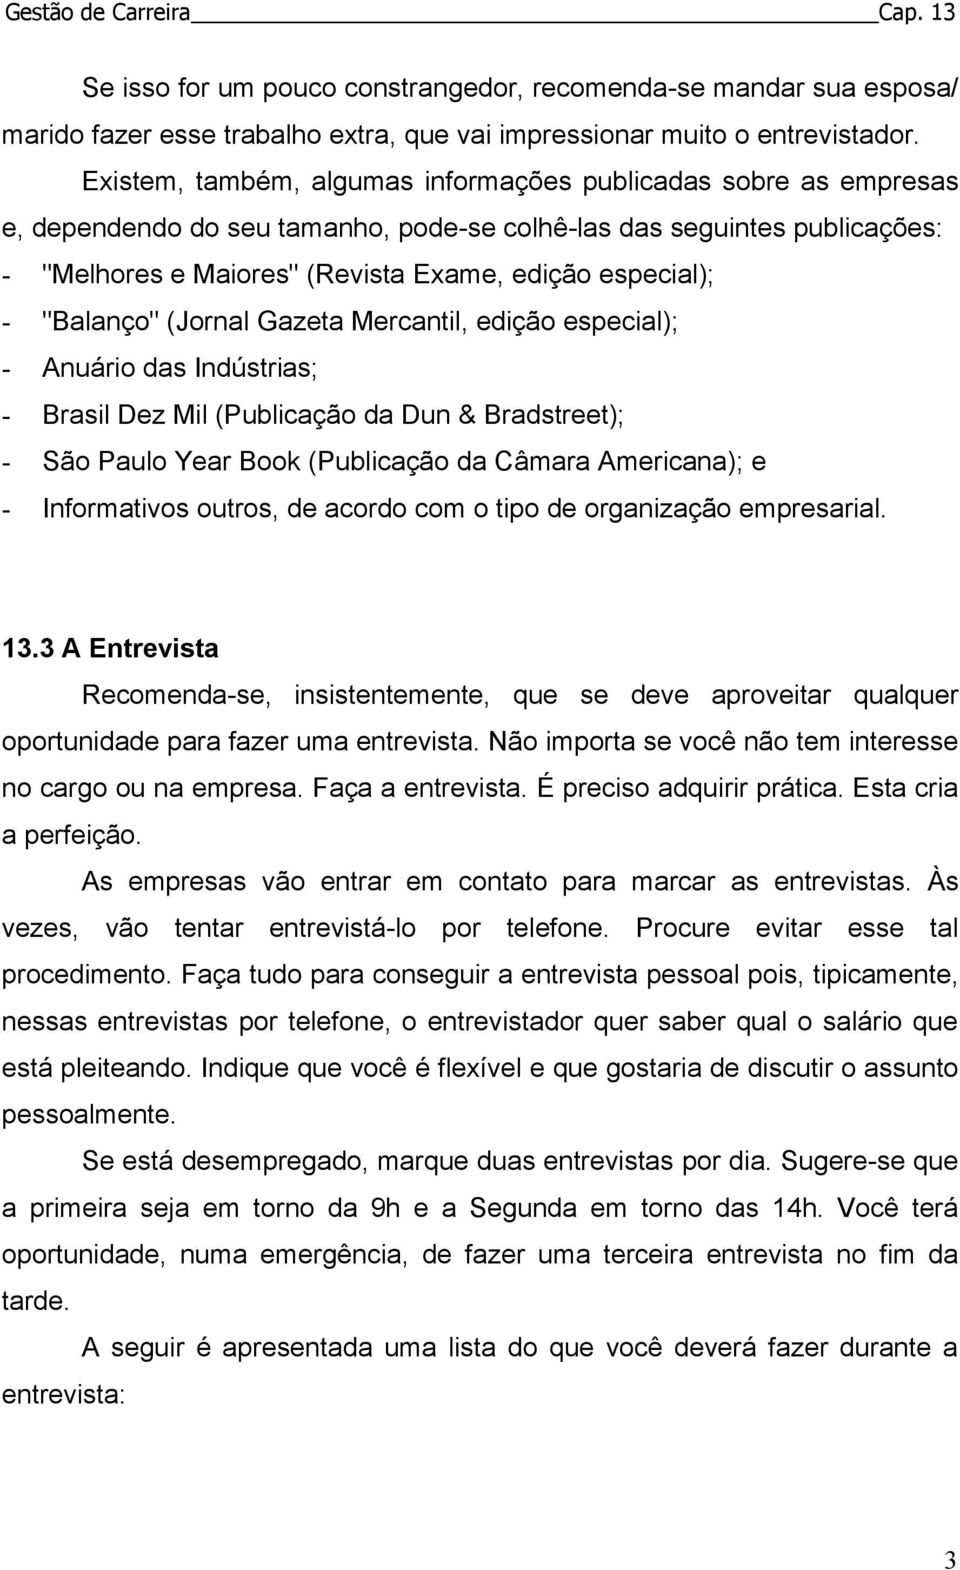 "Balanço" (Jornal Gazeta Mercantil, edição especial); - Anuário das Indústrias; - Brasil Dez Mil (Publicação da Dun & Bradstreet); - São Paulo Year Book (Publicação da Câmara Americana); e -